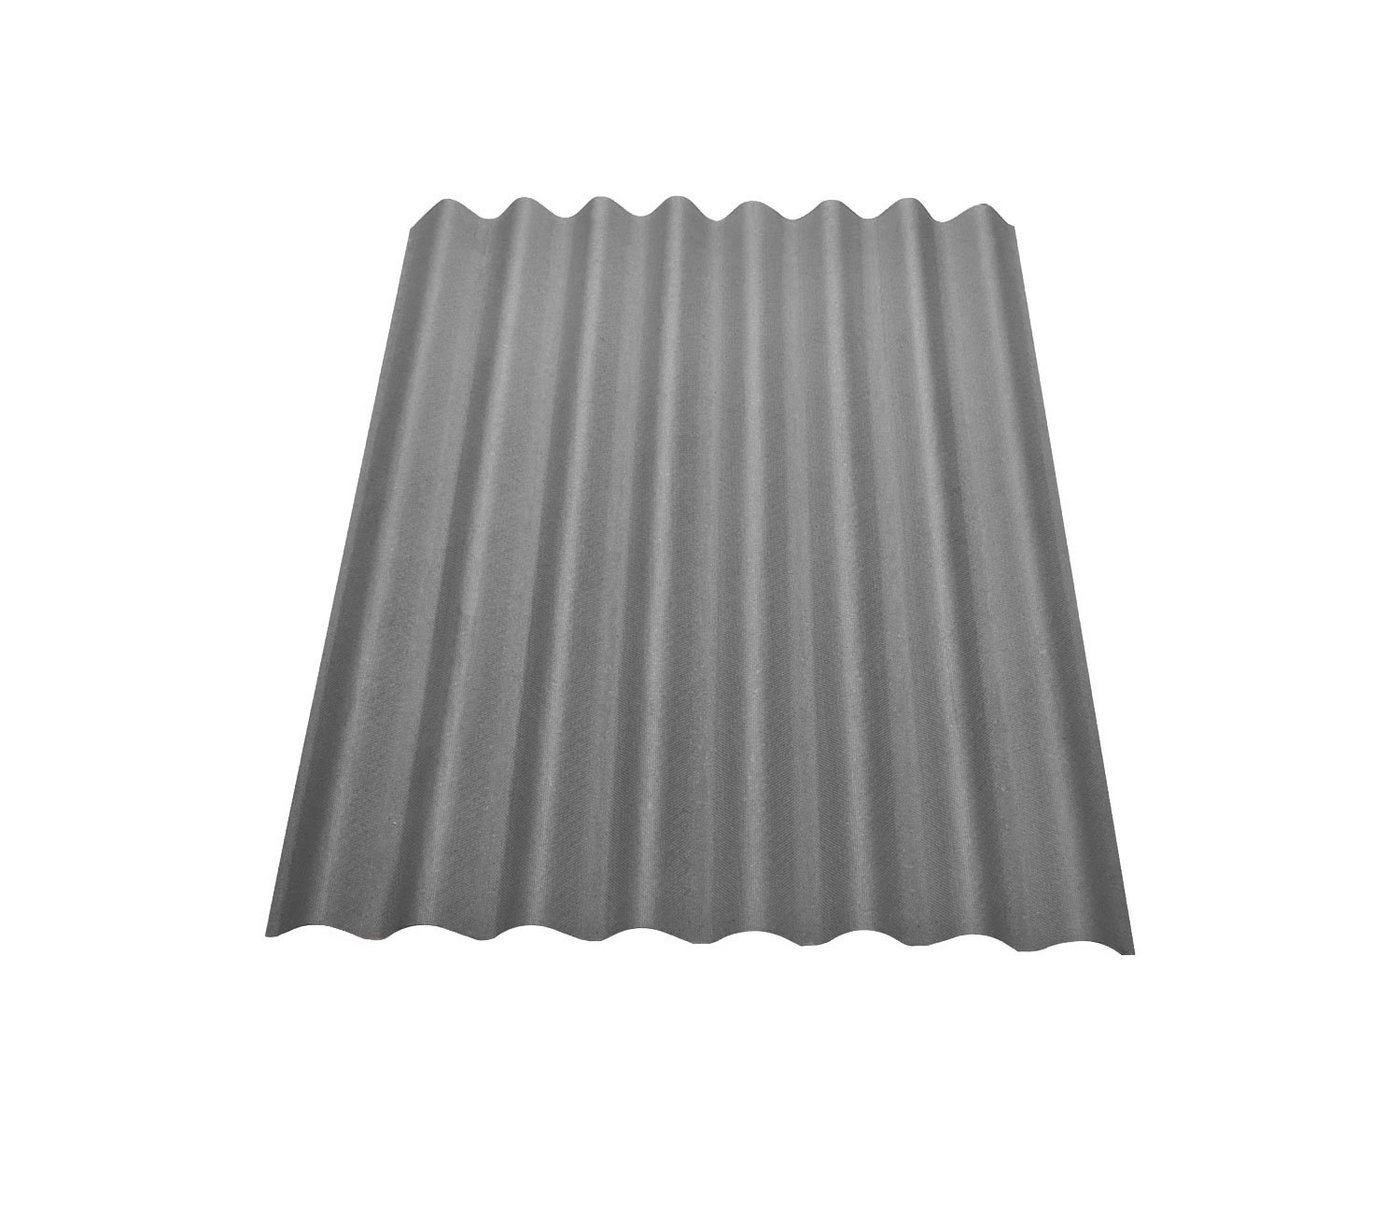 Onduline Dachpappe Onduline Easyline Dachplatte Wandplatte Bitumenwellplatten Wellplatte 1x0,76m - grau, wellig, 0.76 m² pro Paket, (1-St) von Onduline